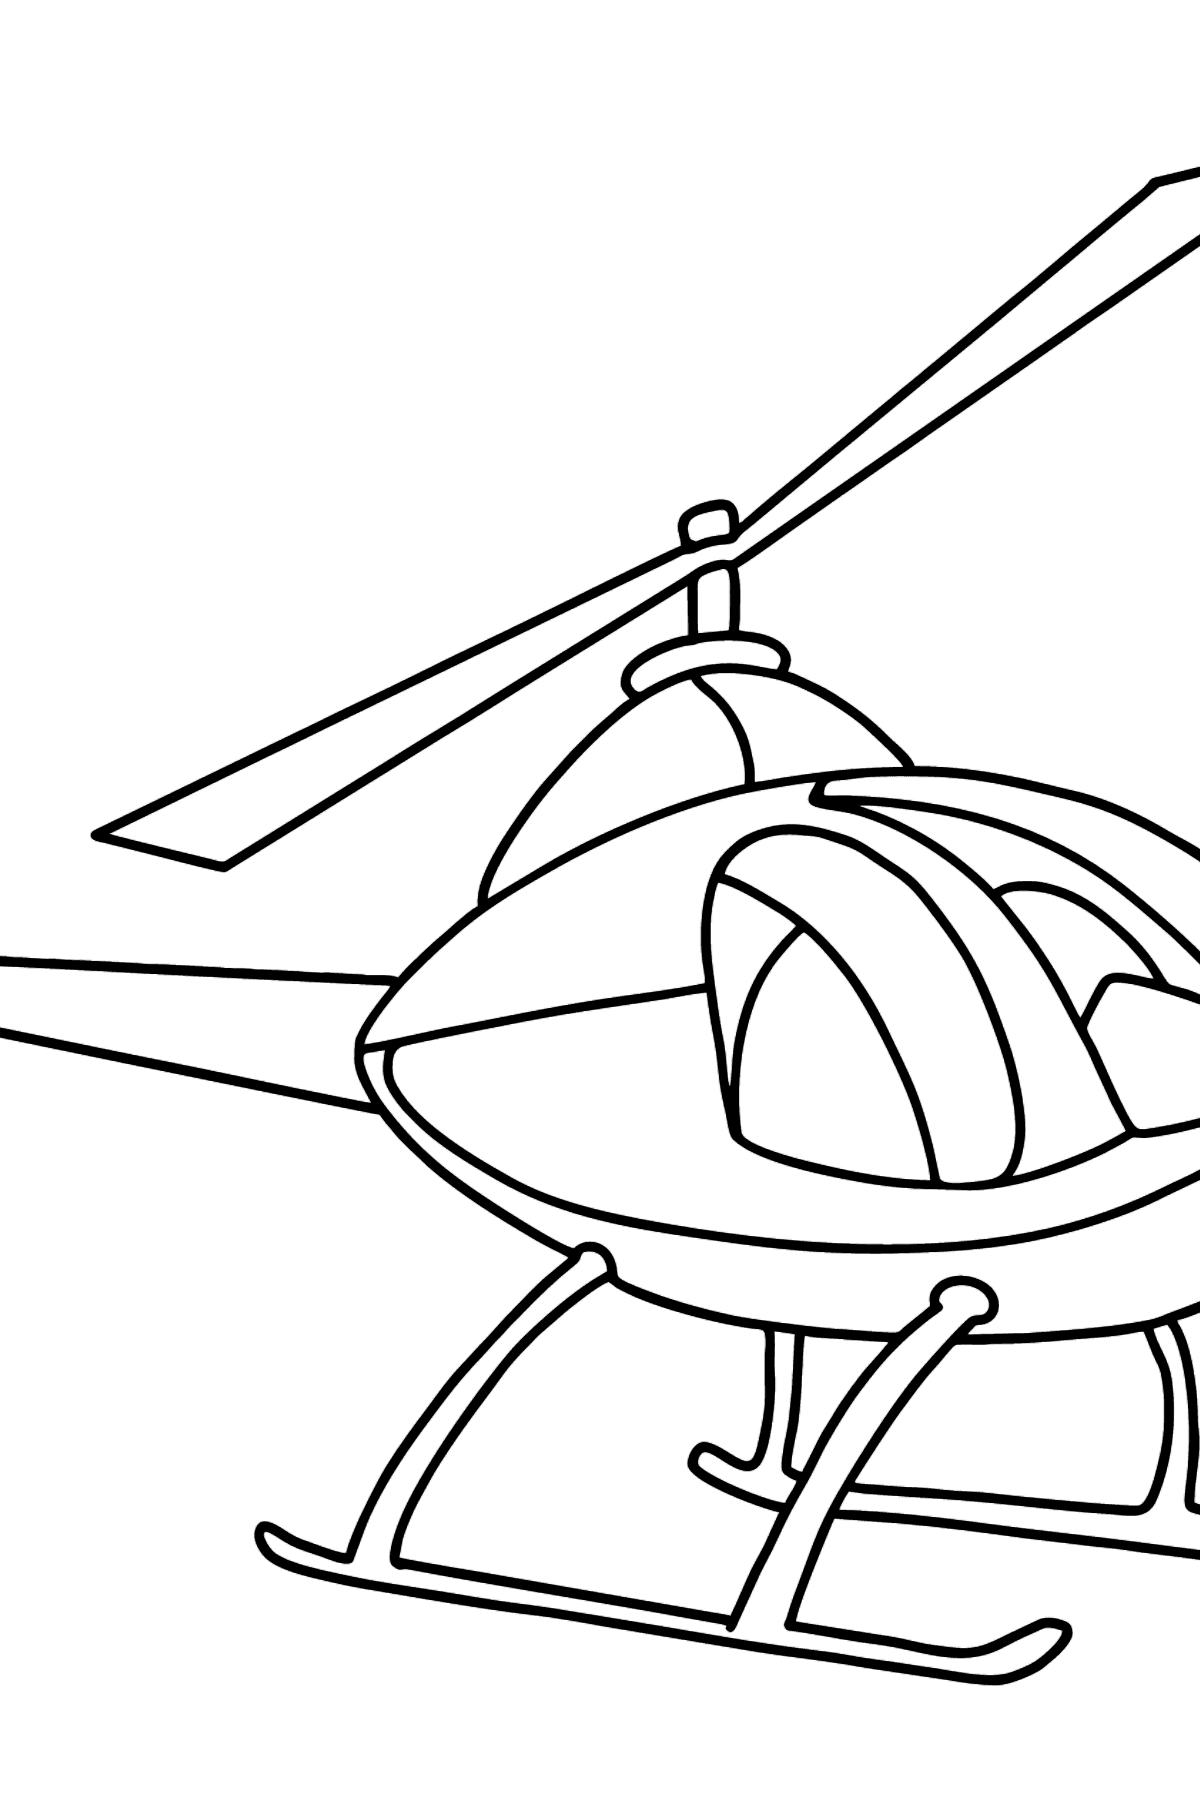 Boyama sayfası çocuklar için helikopter - Boyamalar çocuklar için